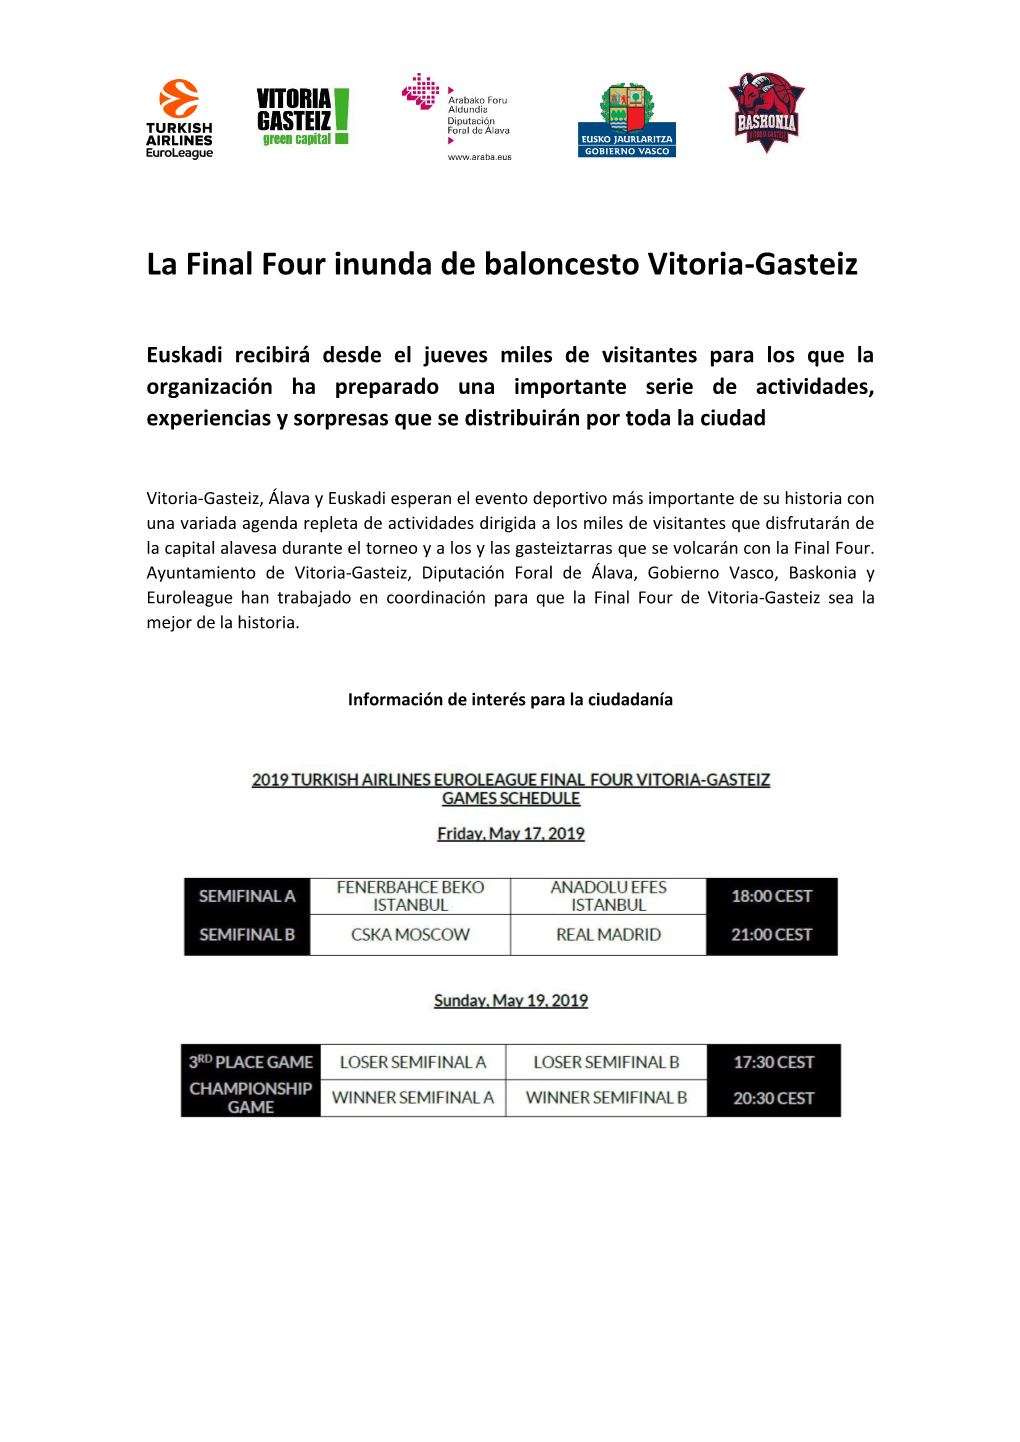 La Final Four Inunda De Baloncesto Vitoria-Gasteiz